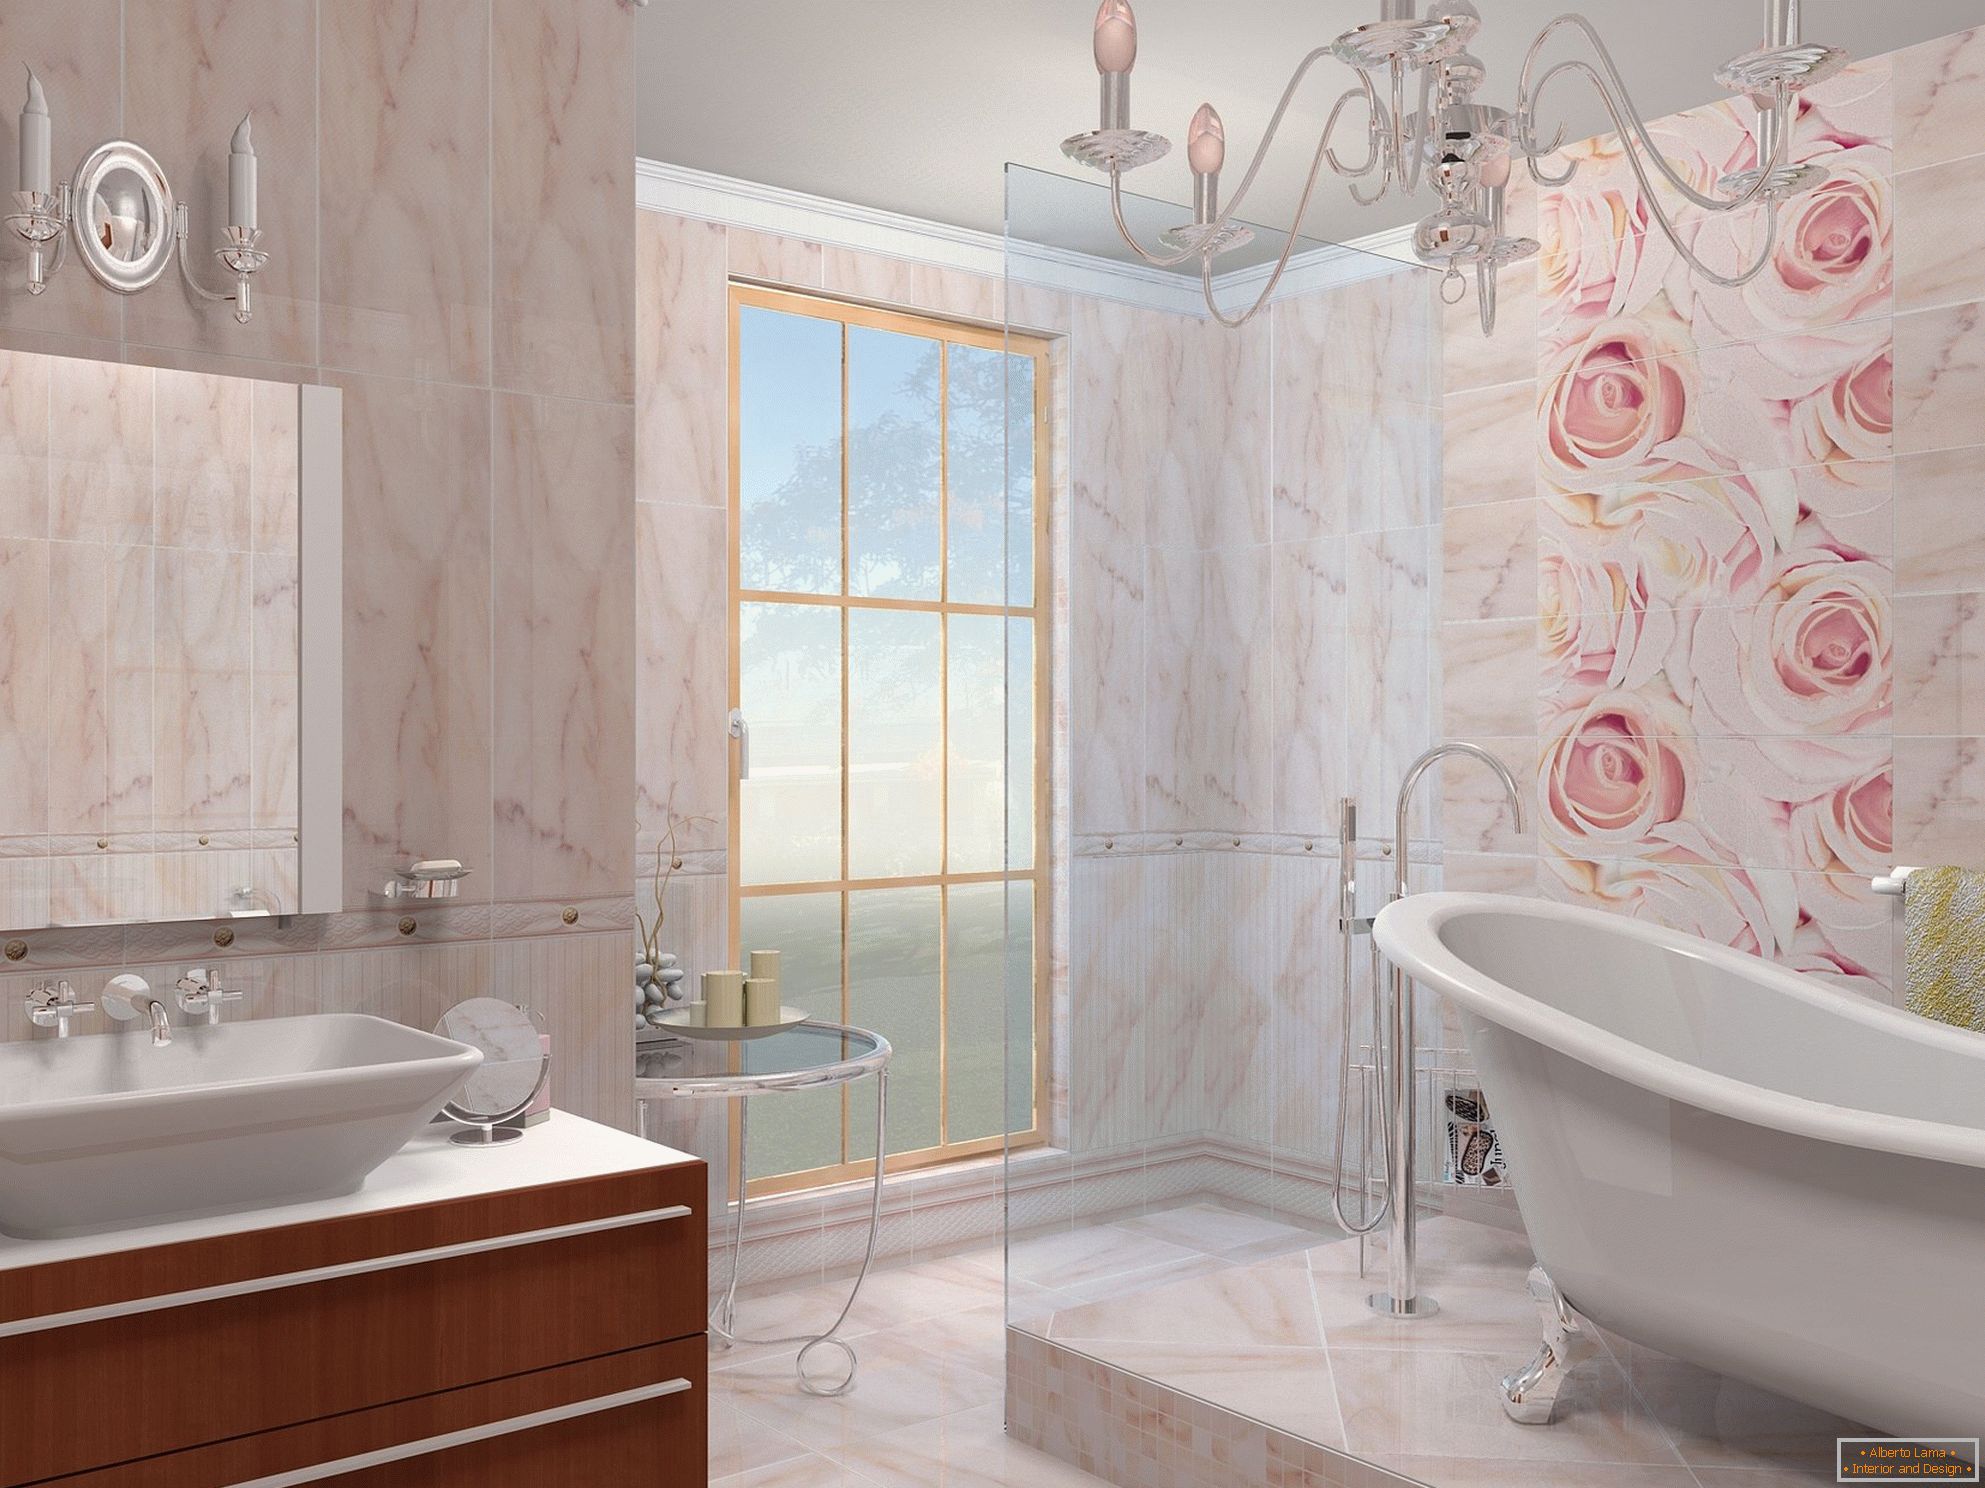 La combinazione di beige e rosa nel design del bagno